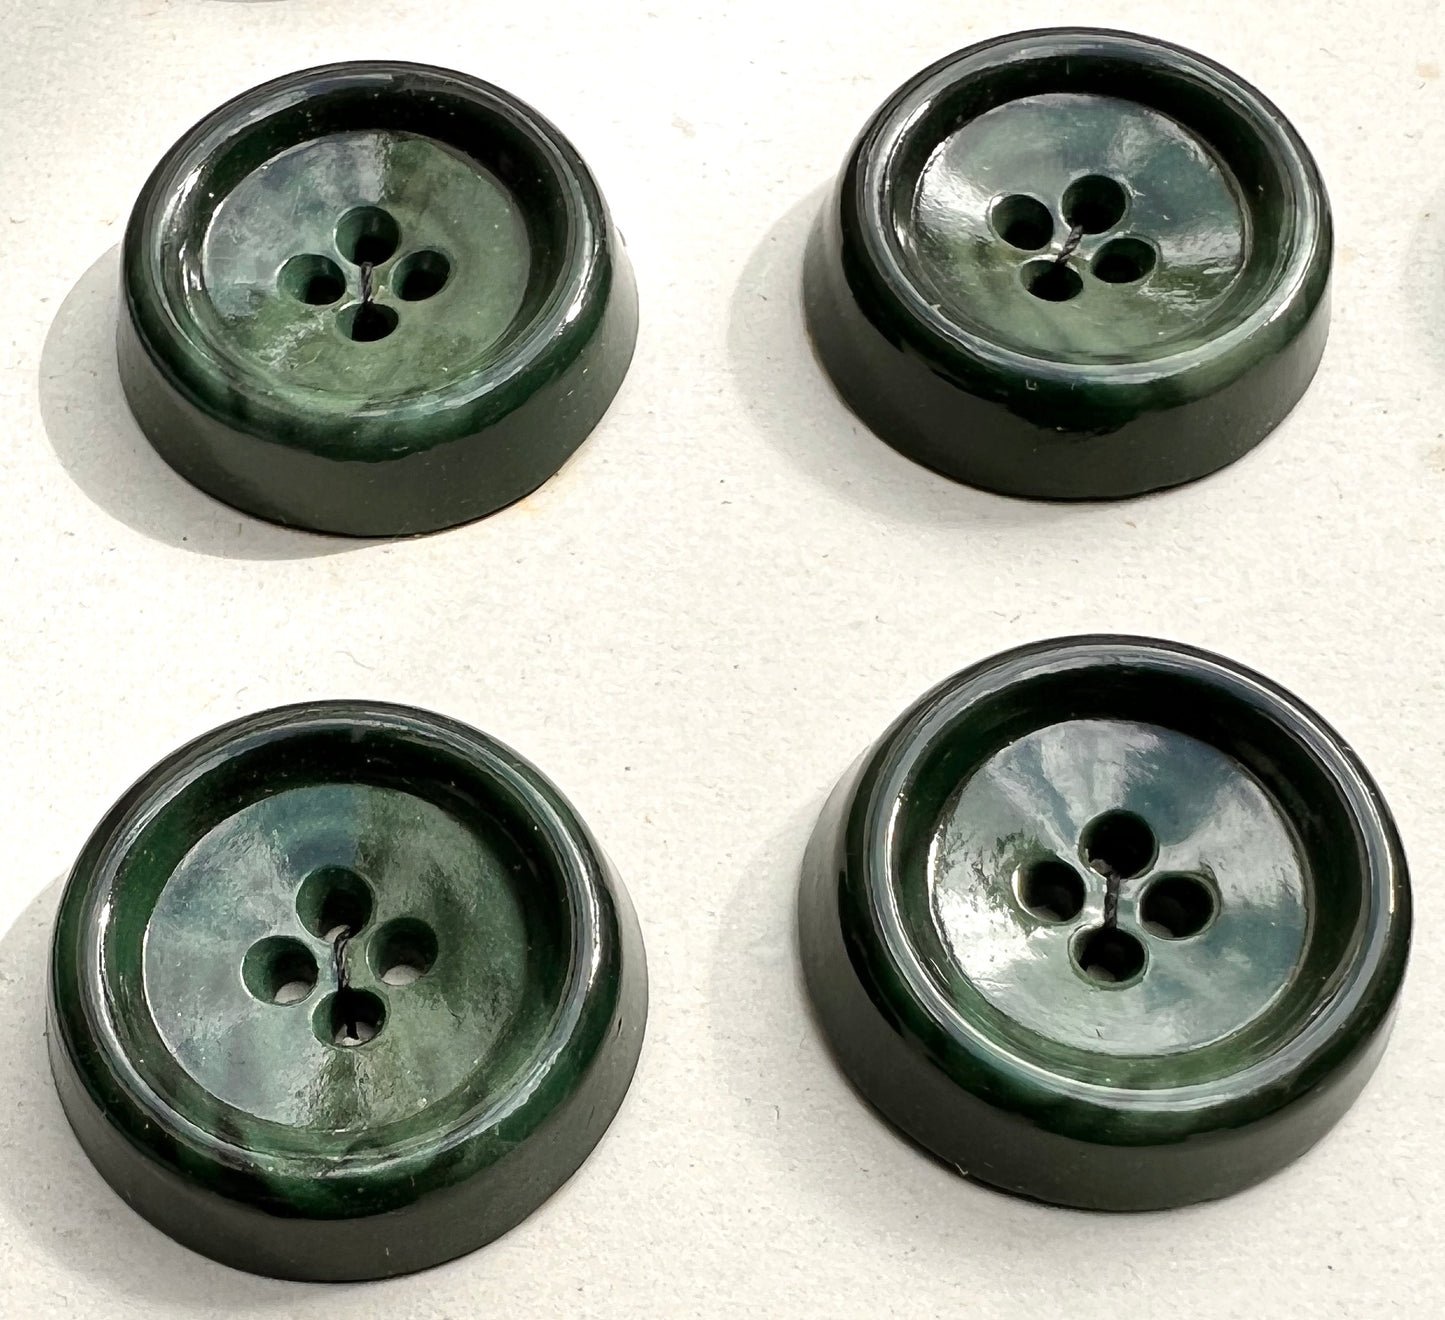 12 Mottled Forest Green 2.6cm Vintage Buttons